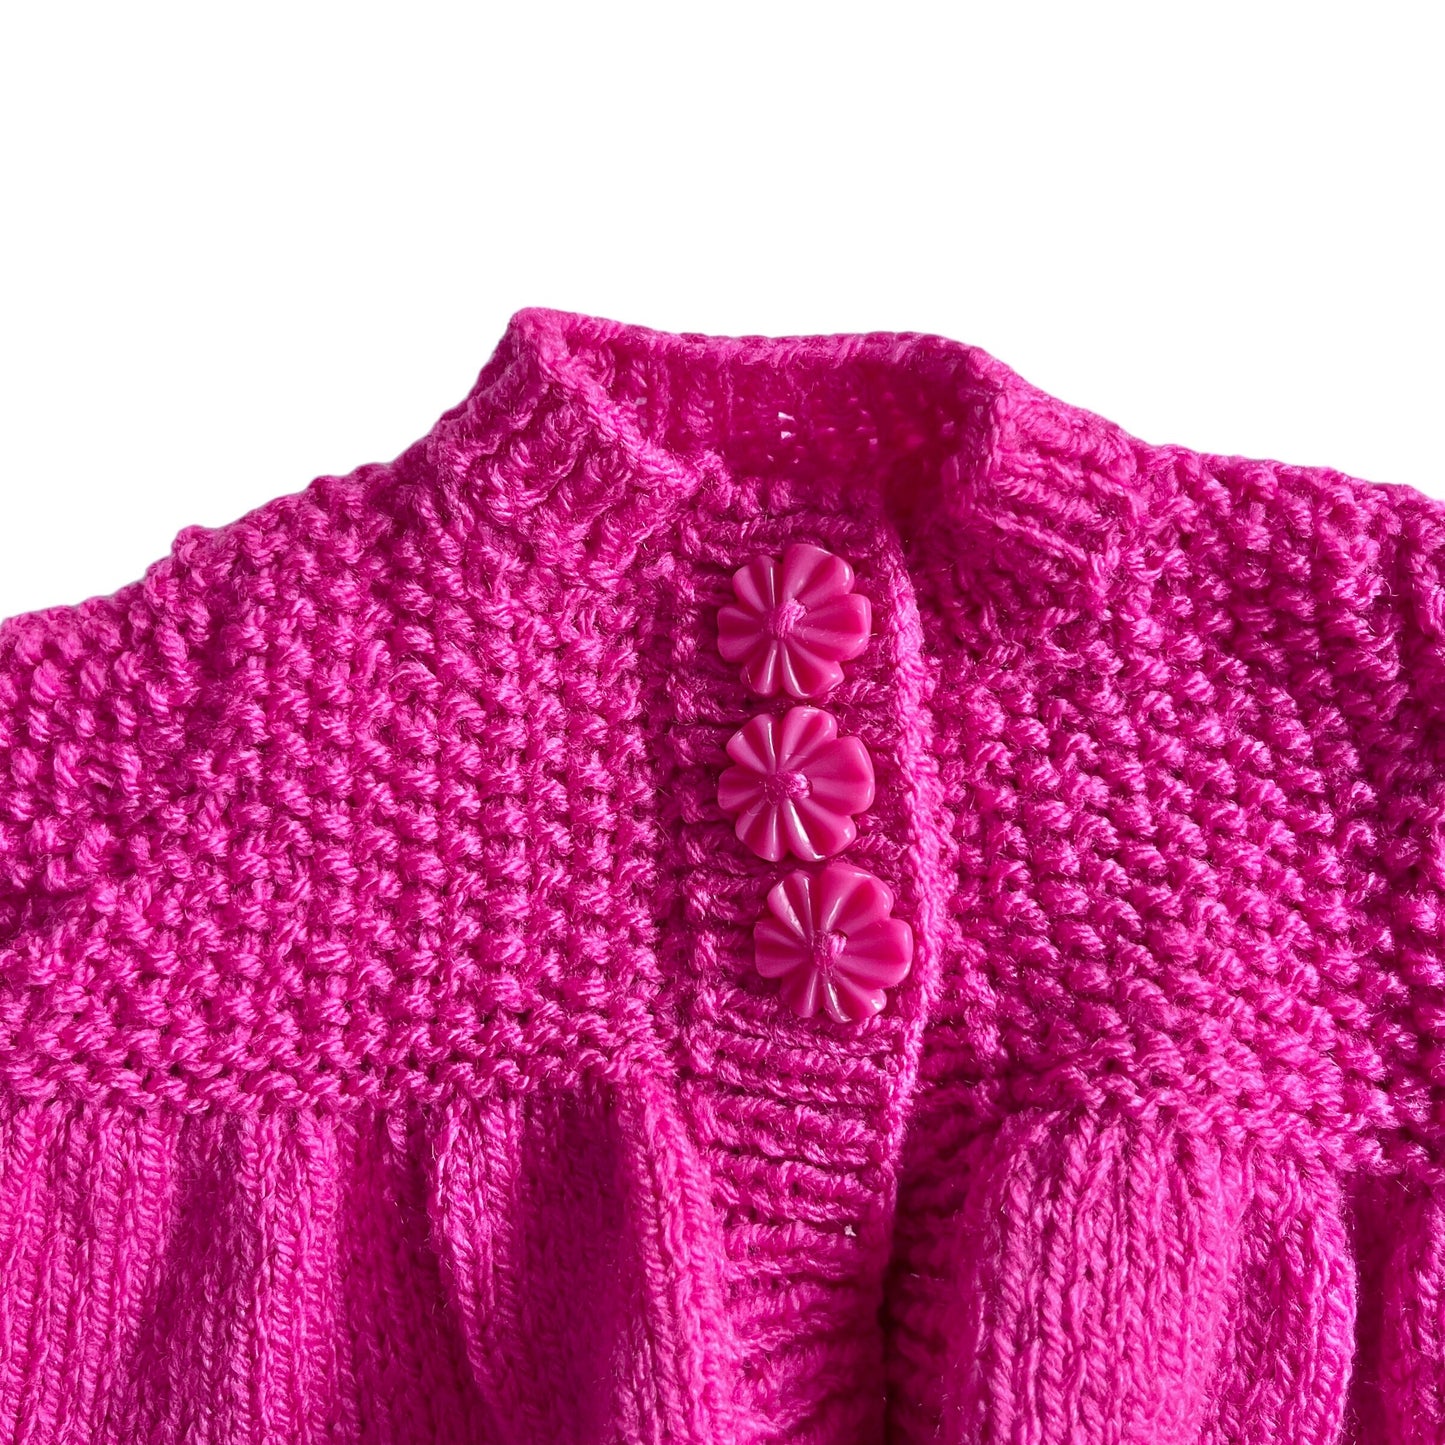 Vintage Knitted Pink Cardigan Newborn / 0-3 Months